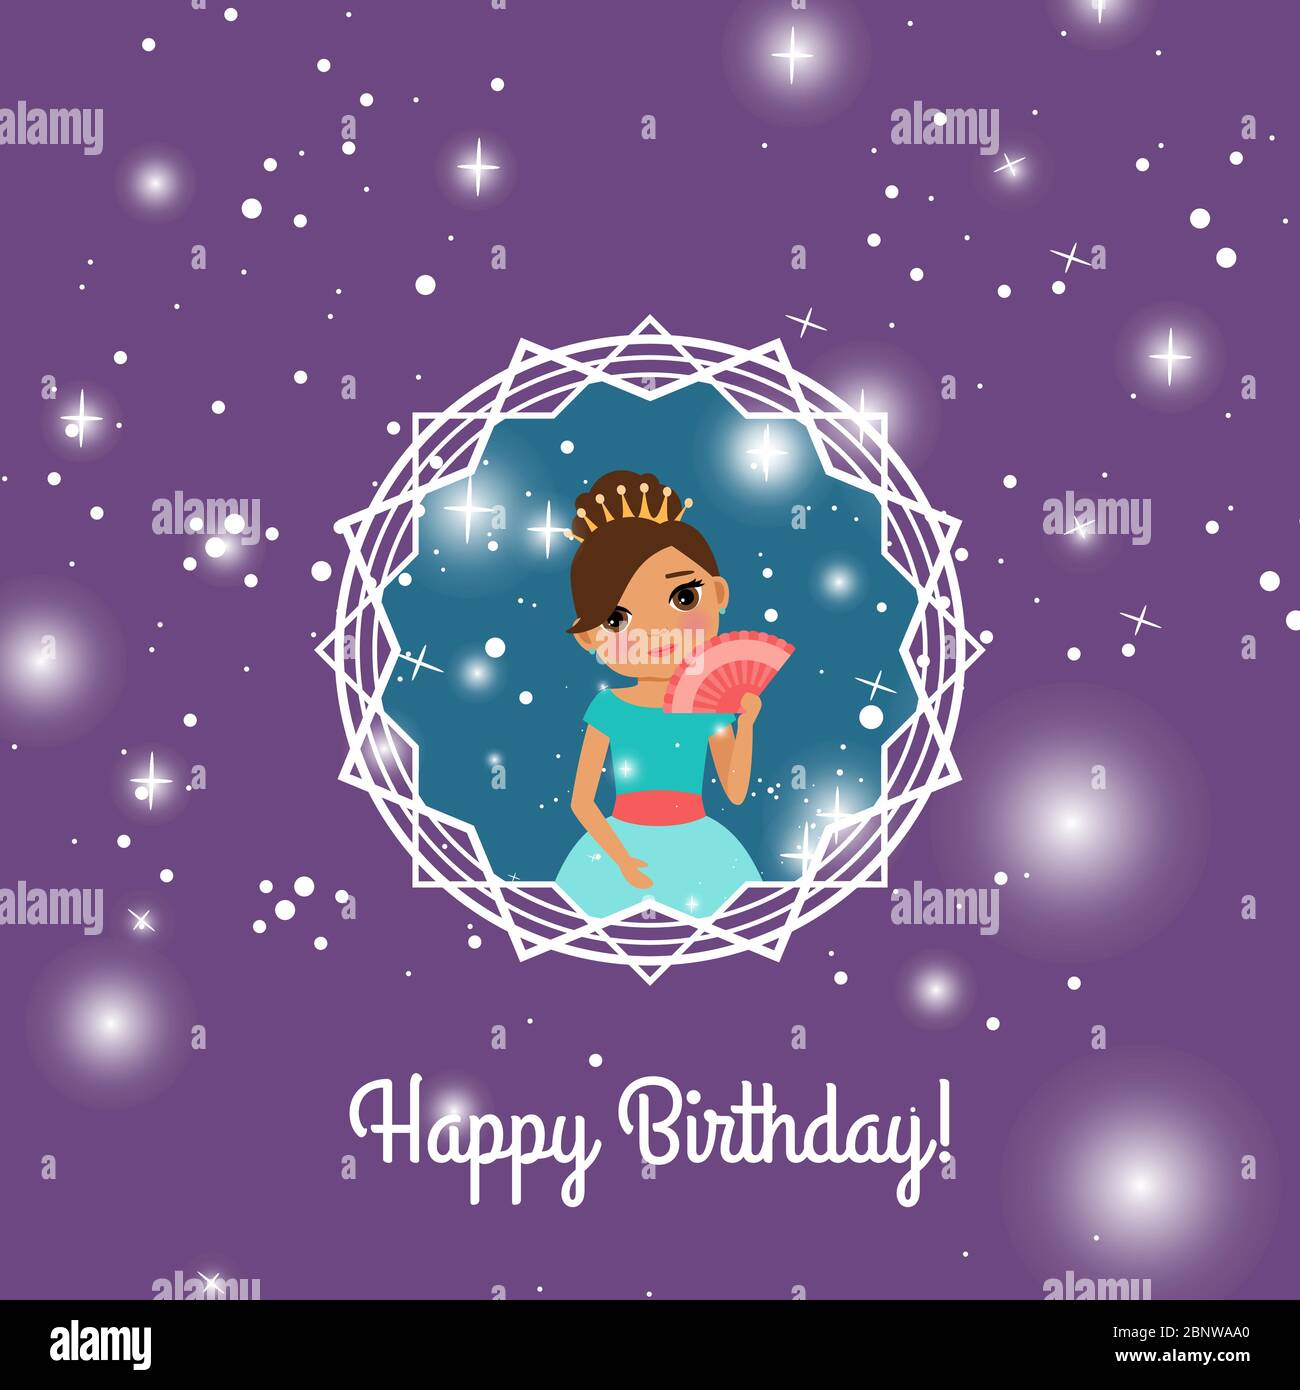 Carte De Voeux Violette Joyeux Anniversaire Avec Princesse Fee Illustration Vectorielle Image Vectorielle Stock Alamy